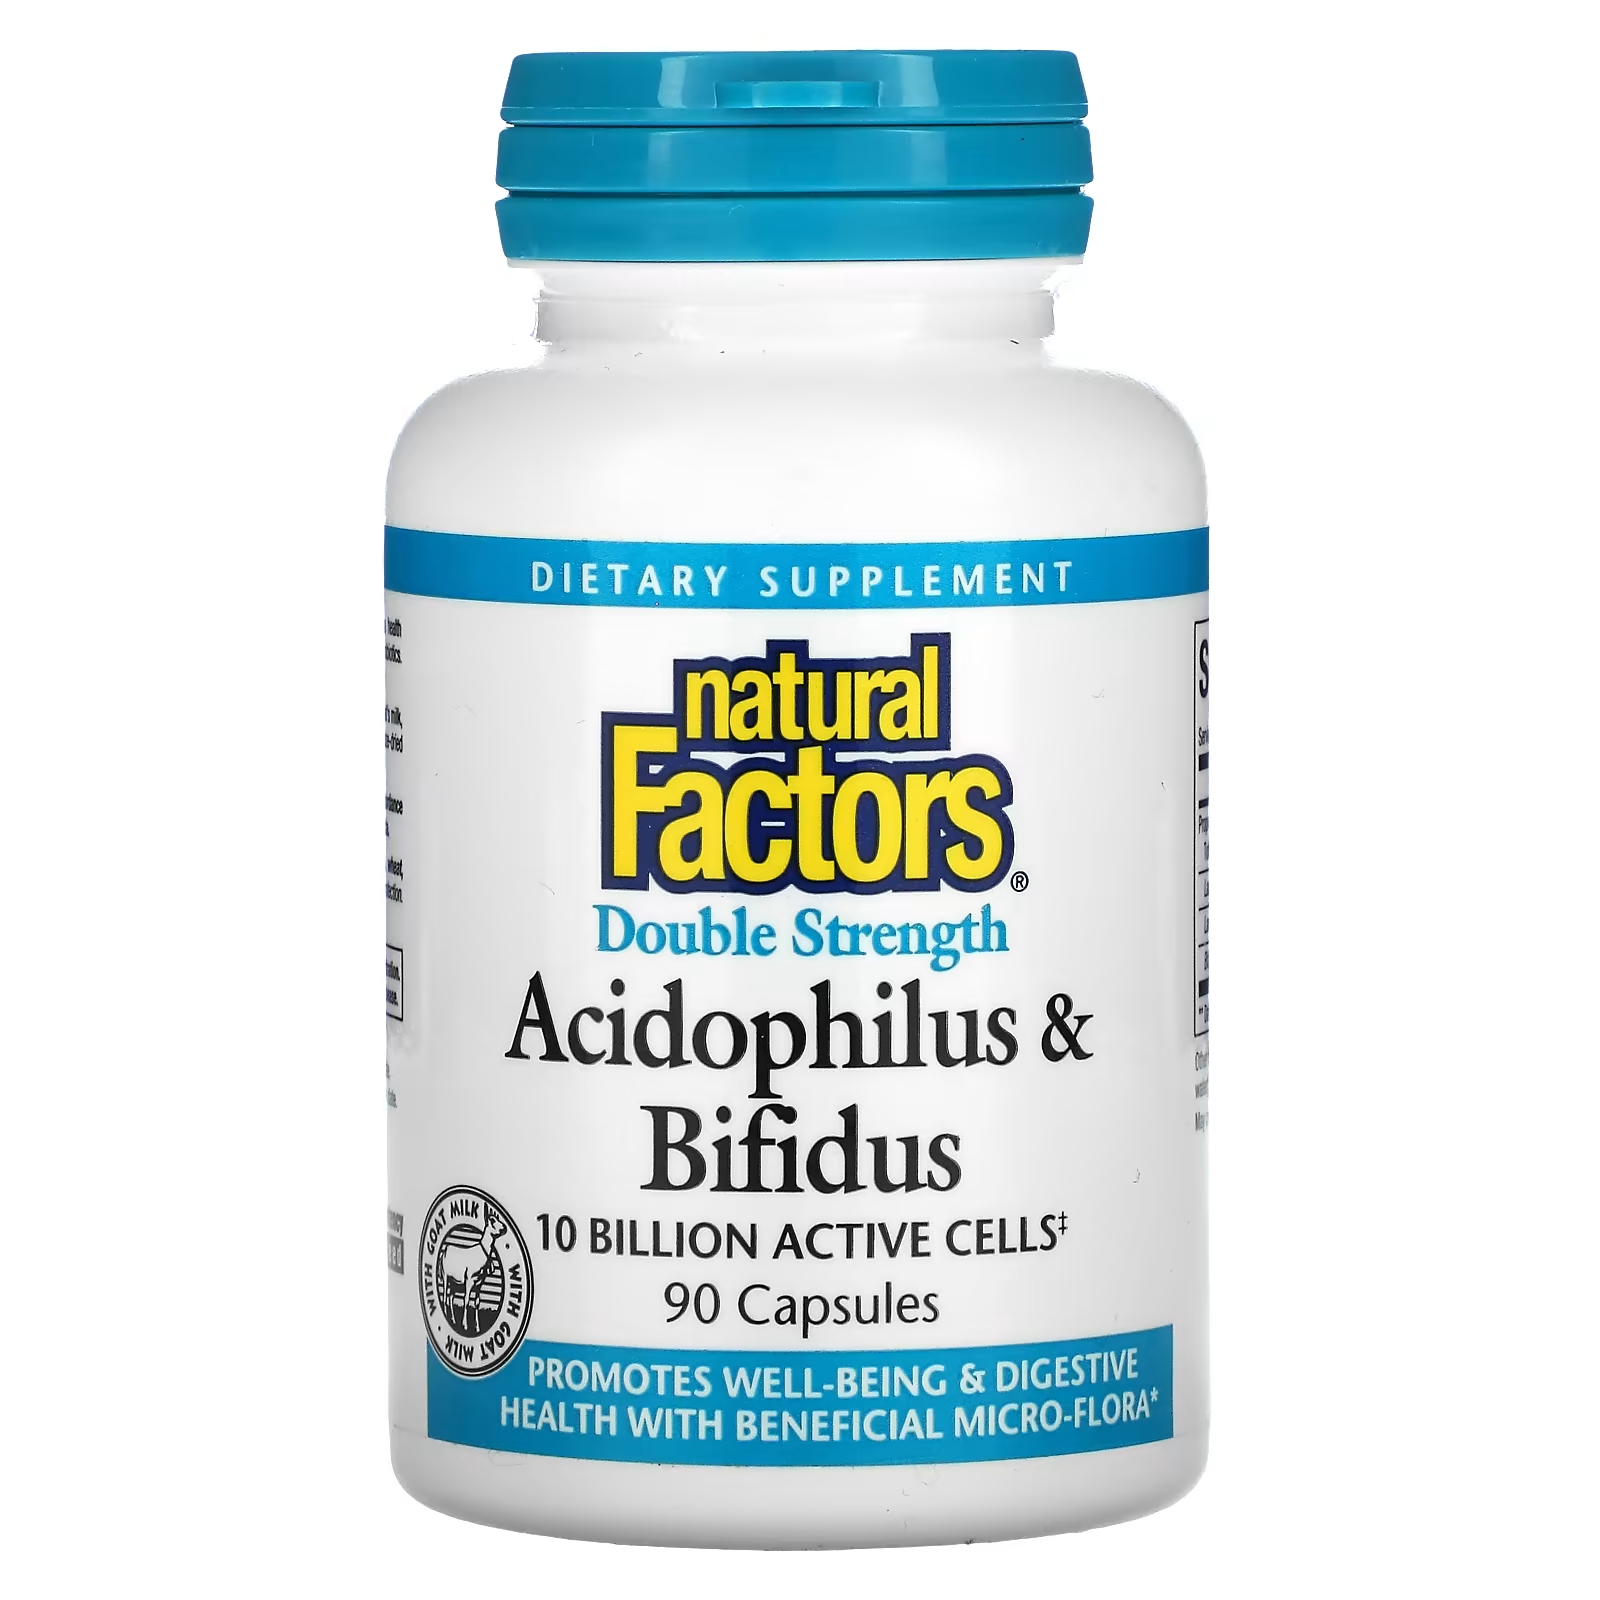 Пищевая добавка Natural Factors Acidophilus & Bifidus двойной силы, 90 капсул